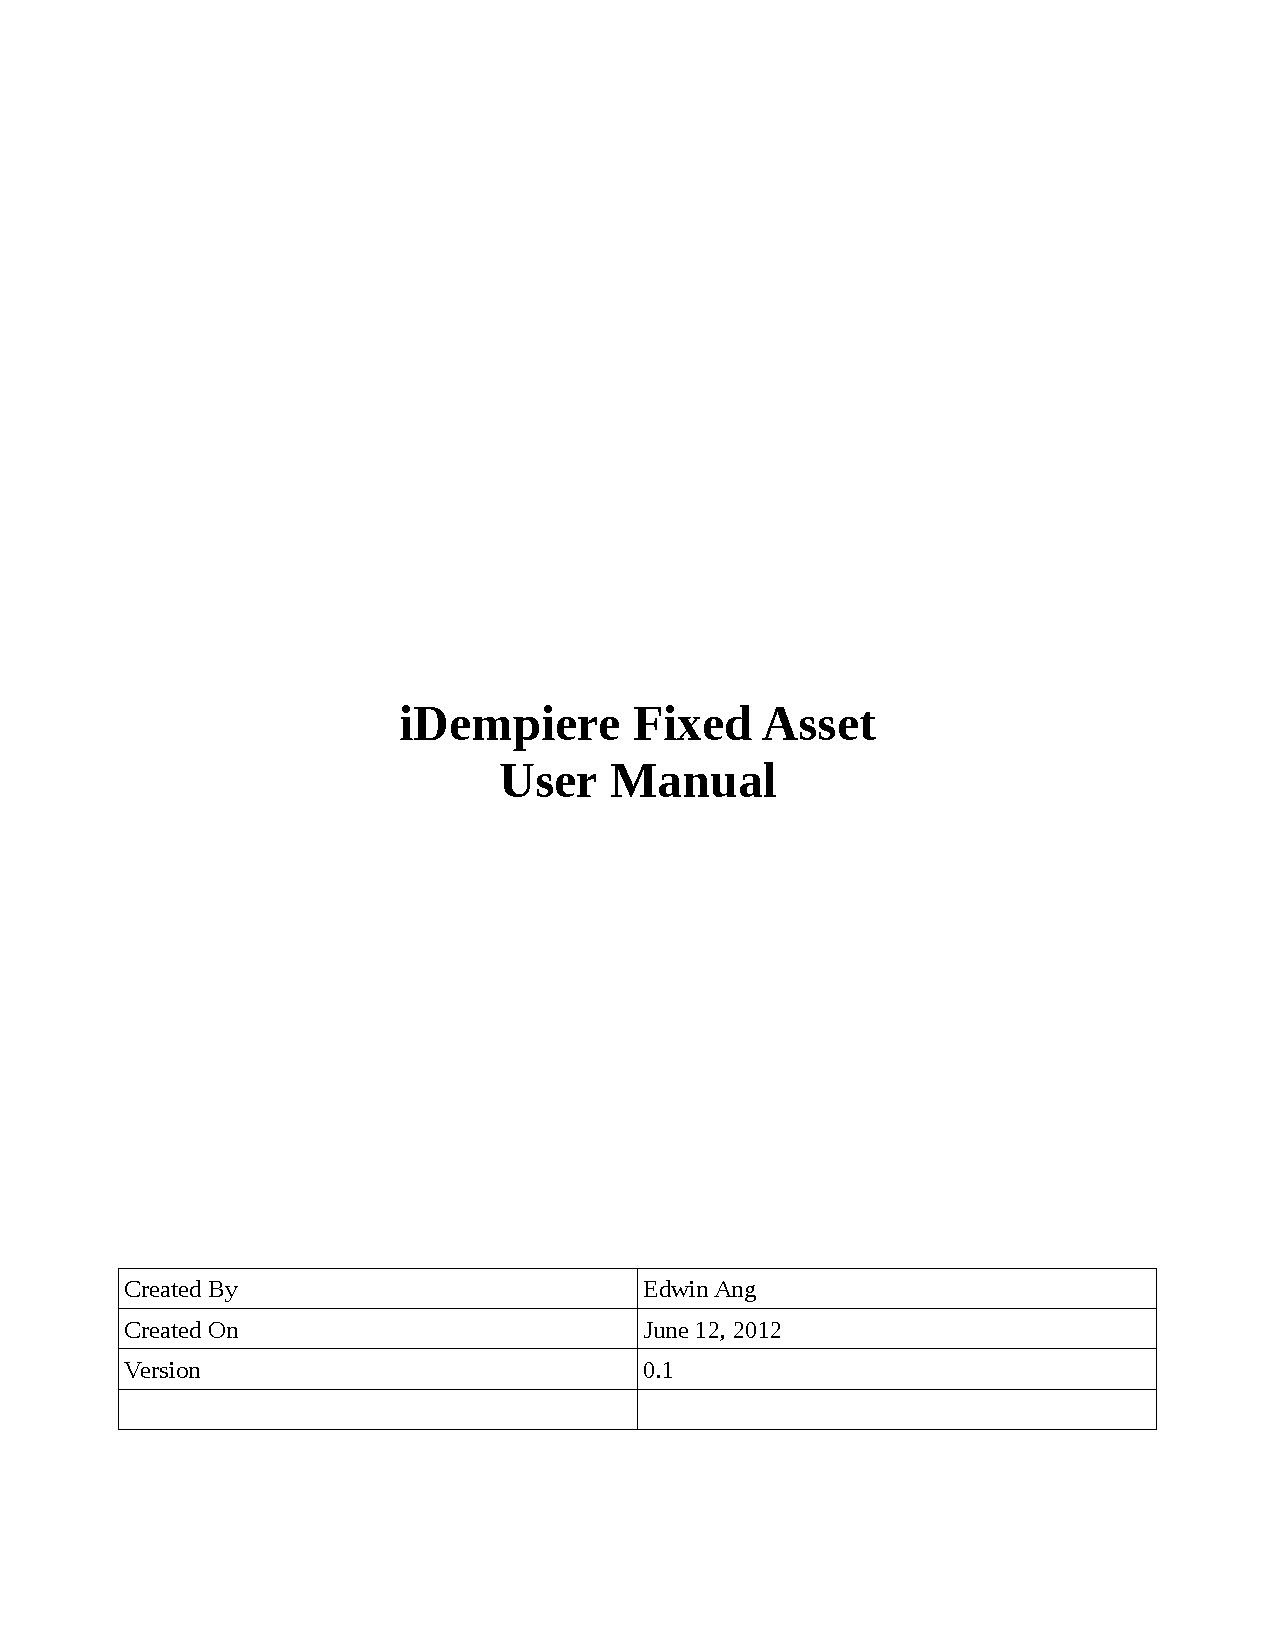 IDempiere FA User Manual.pdf